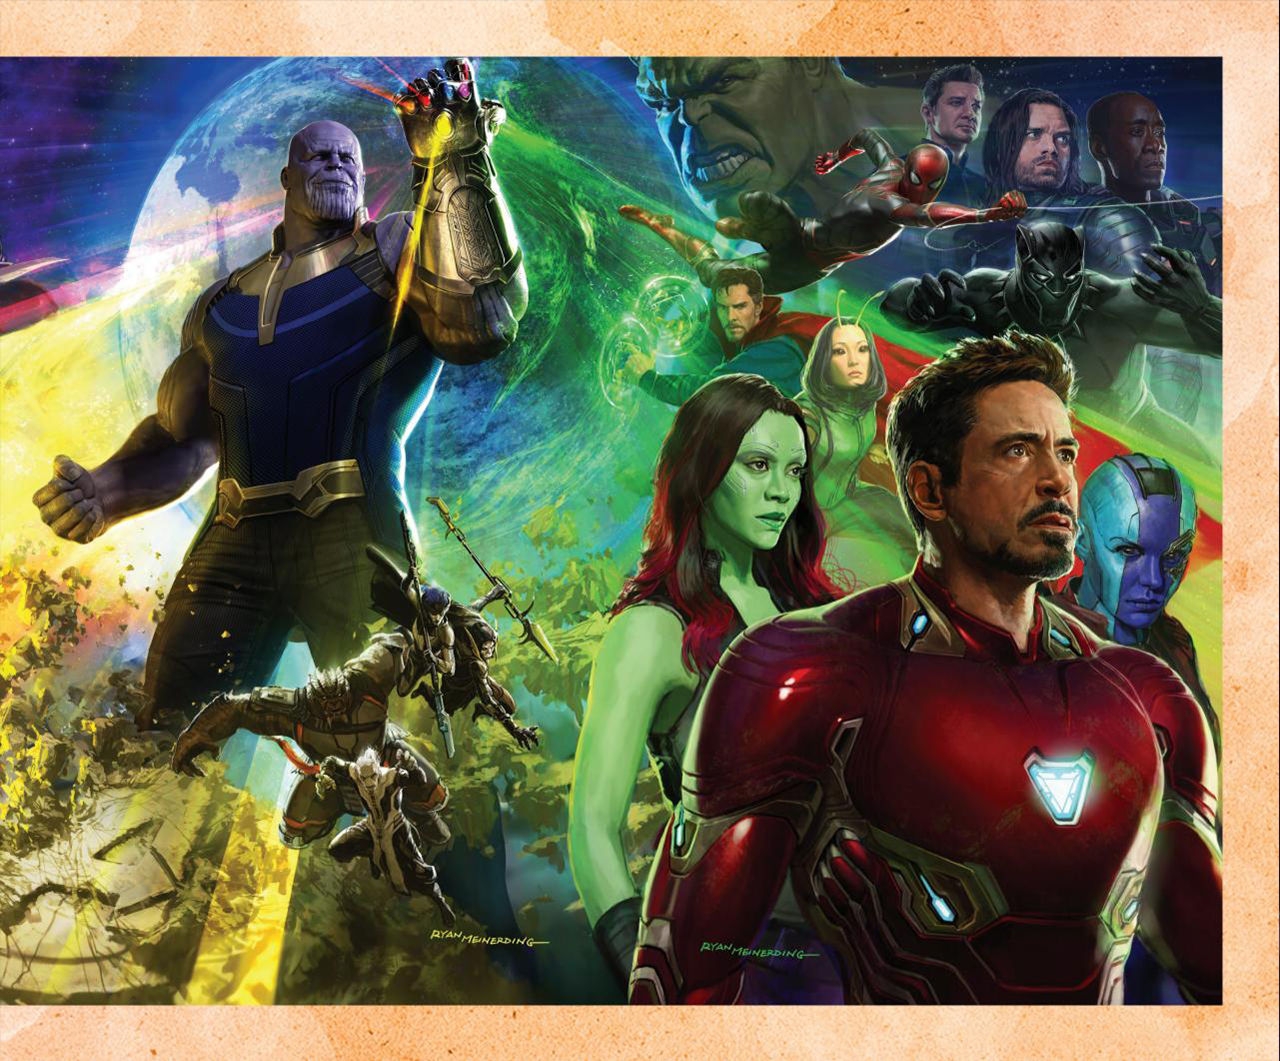 The Art of Marvel's Avengers Infinity War 7